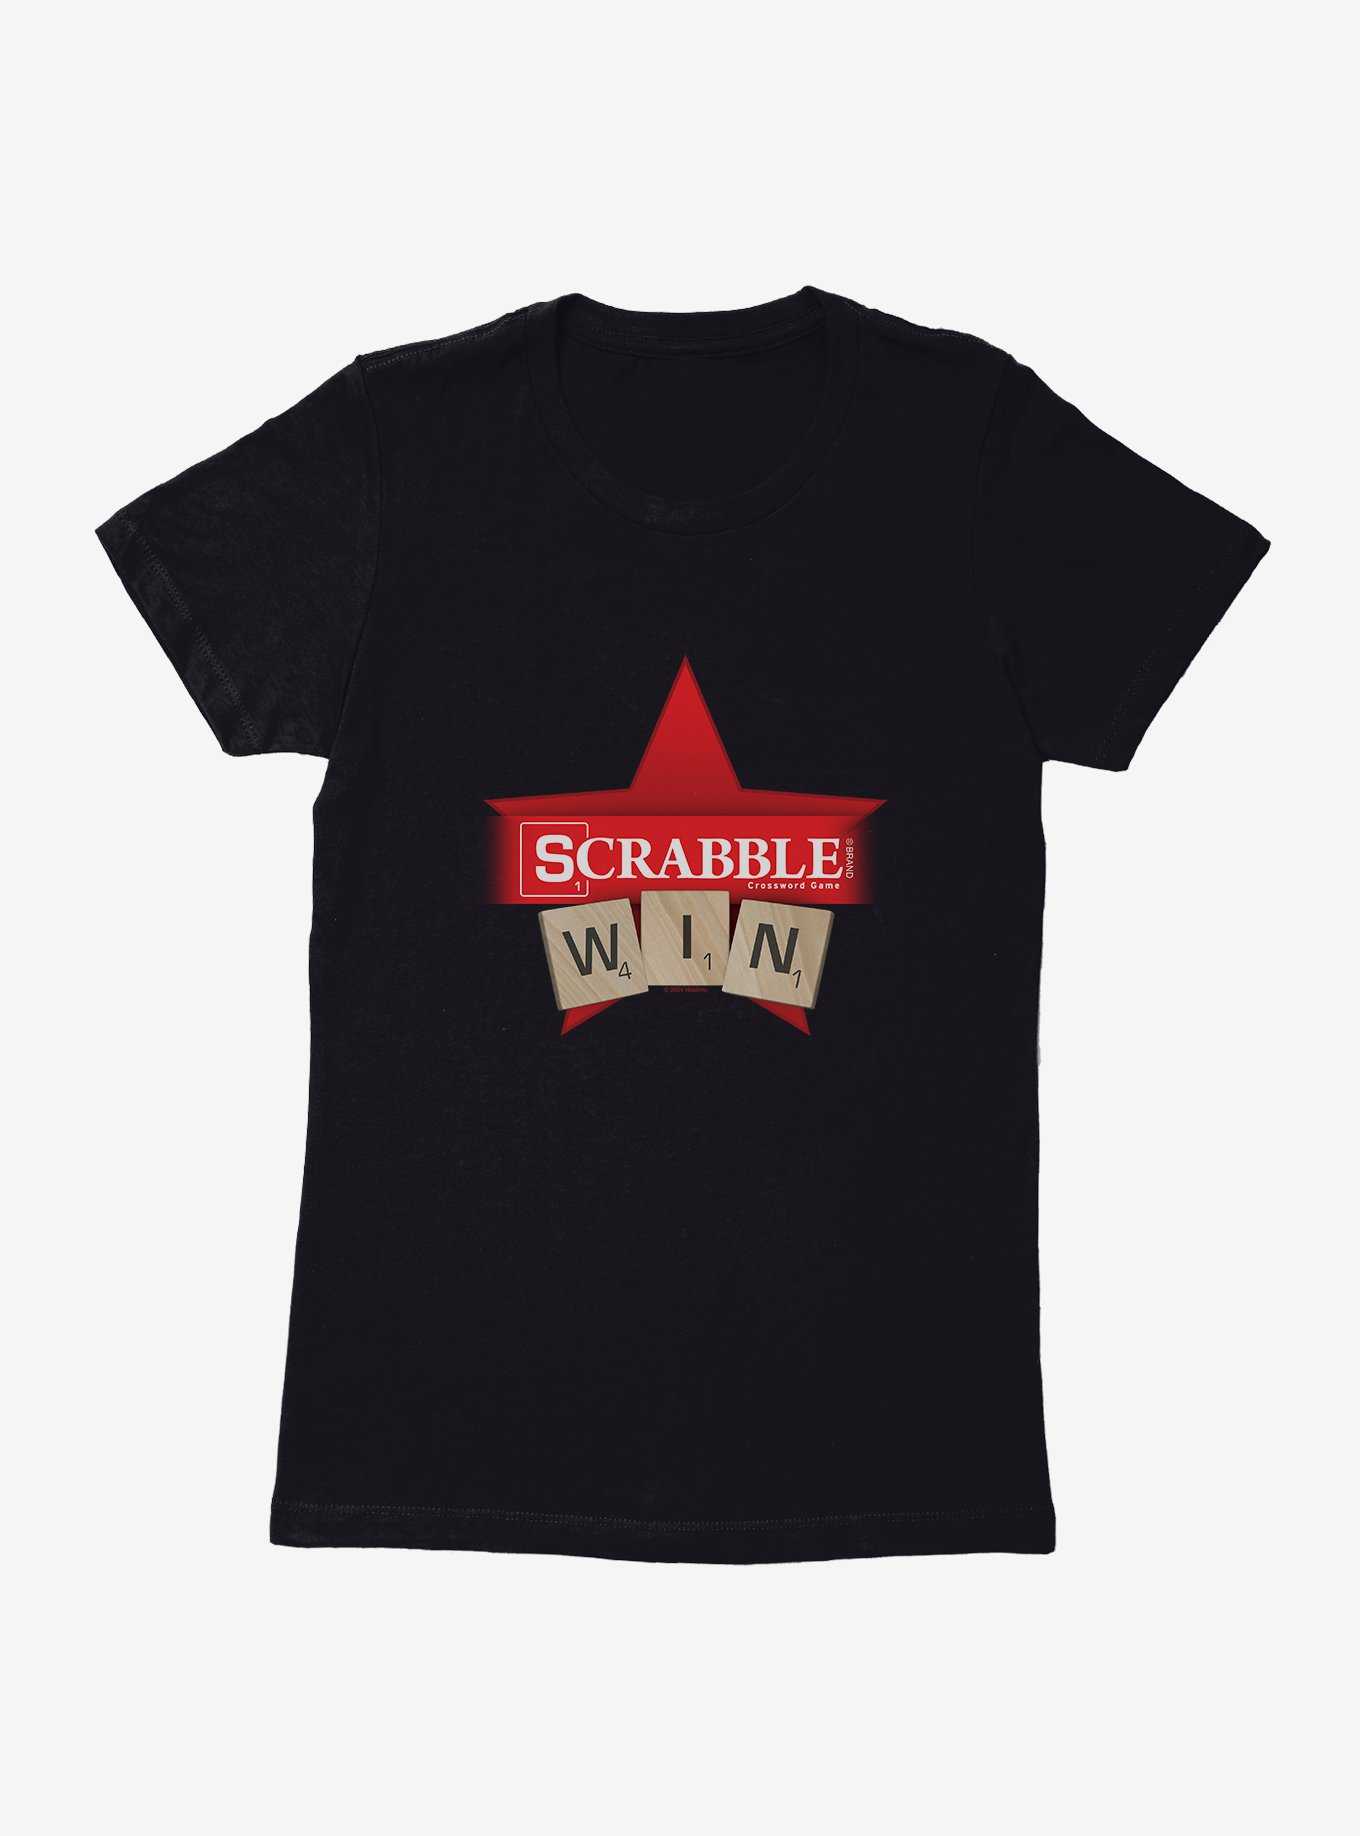 Scrabble Win Tiles Womens T-Shirt, , hi-res